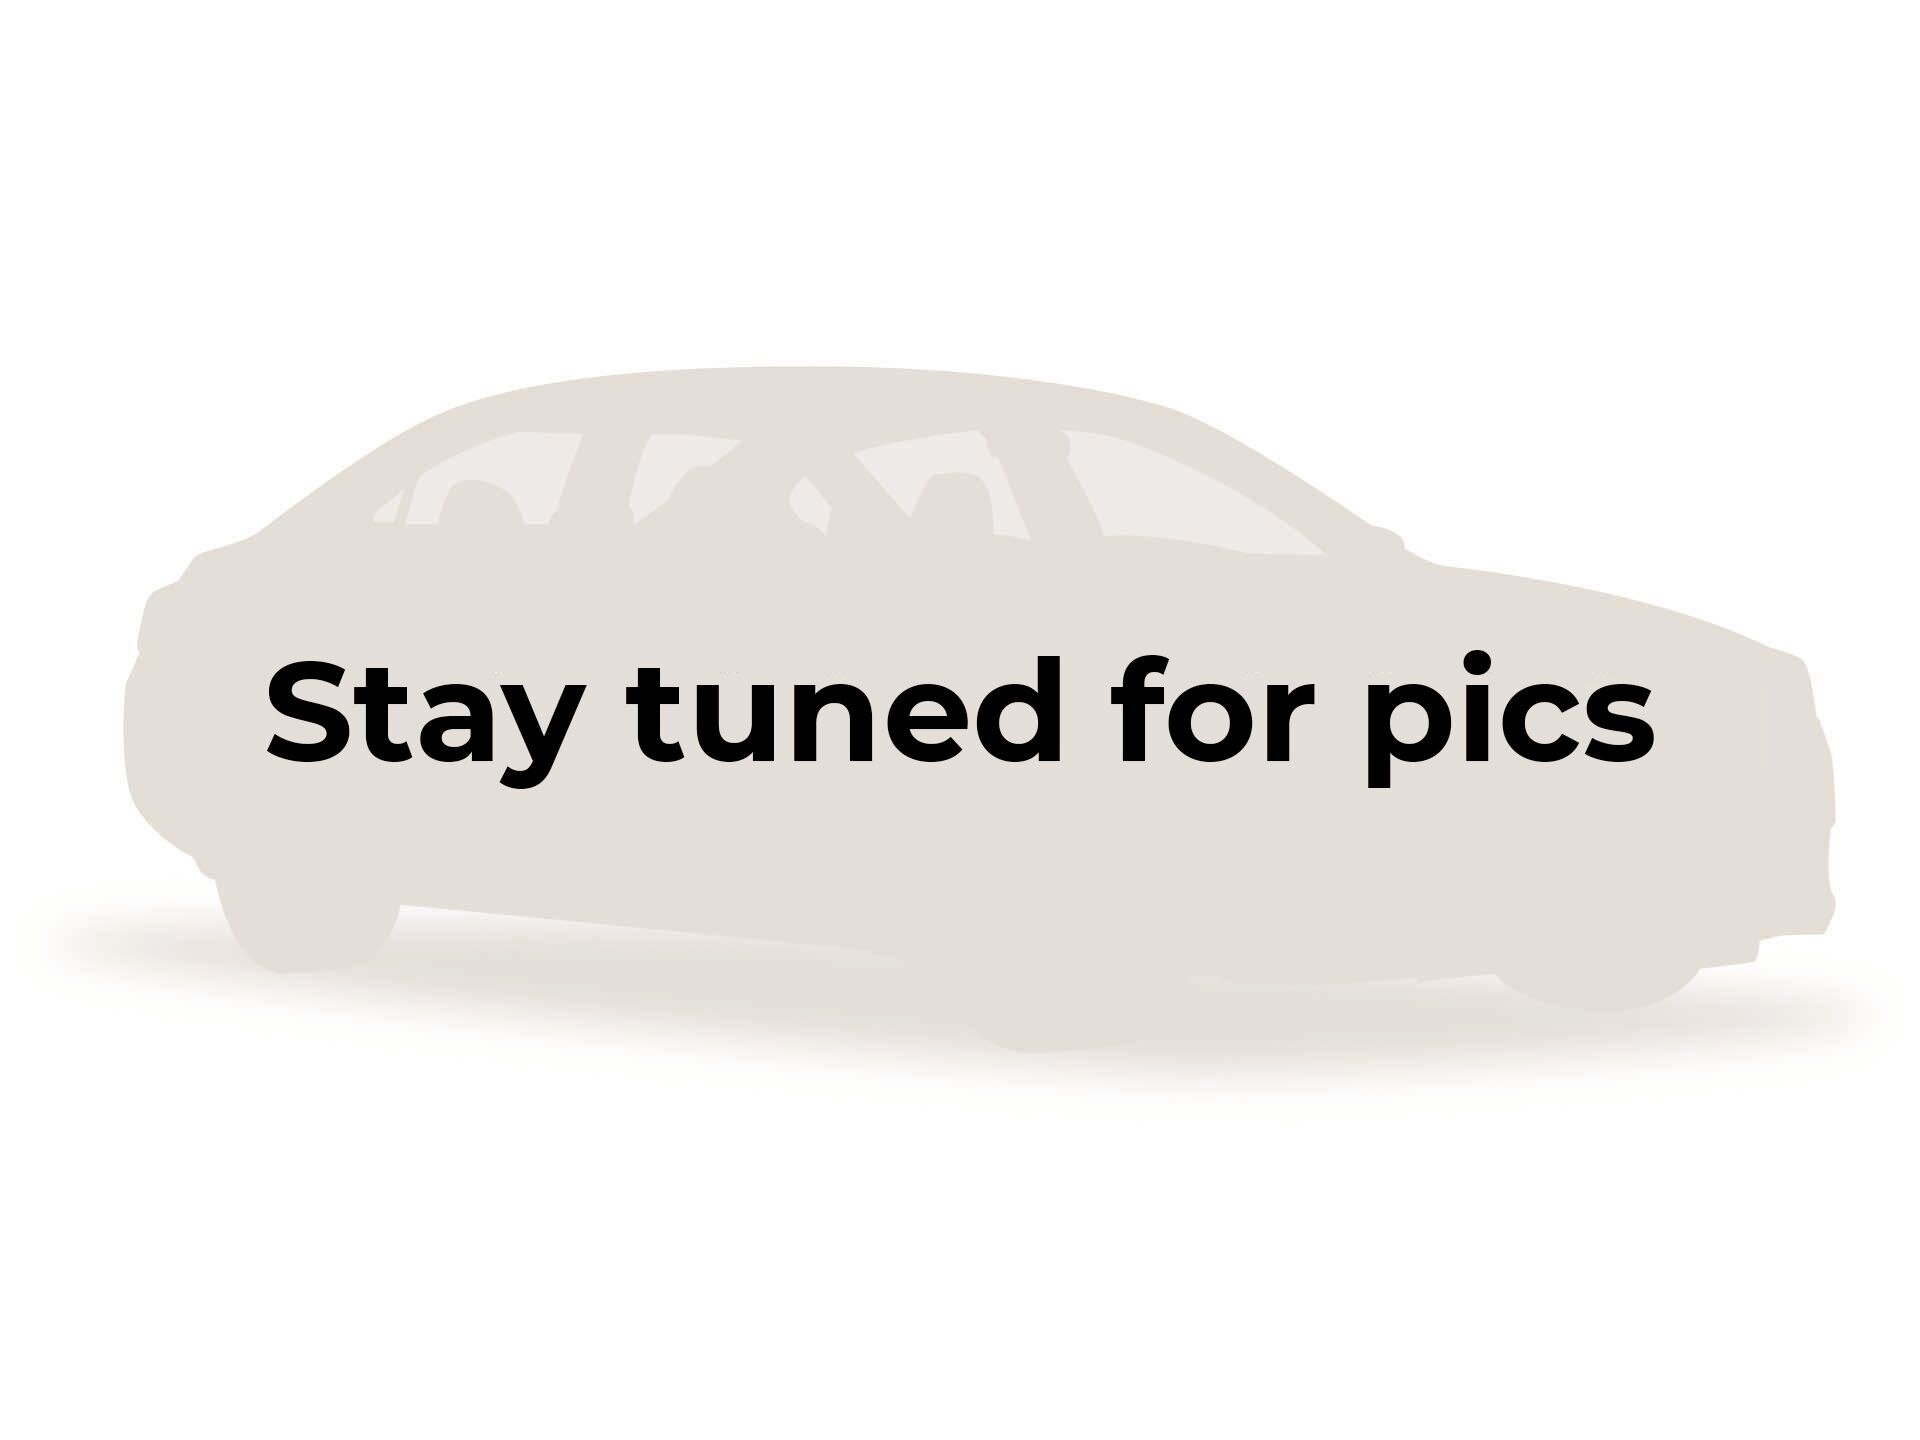 2016 Porsche Cayman